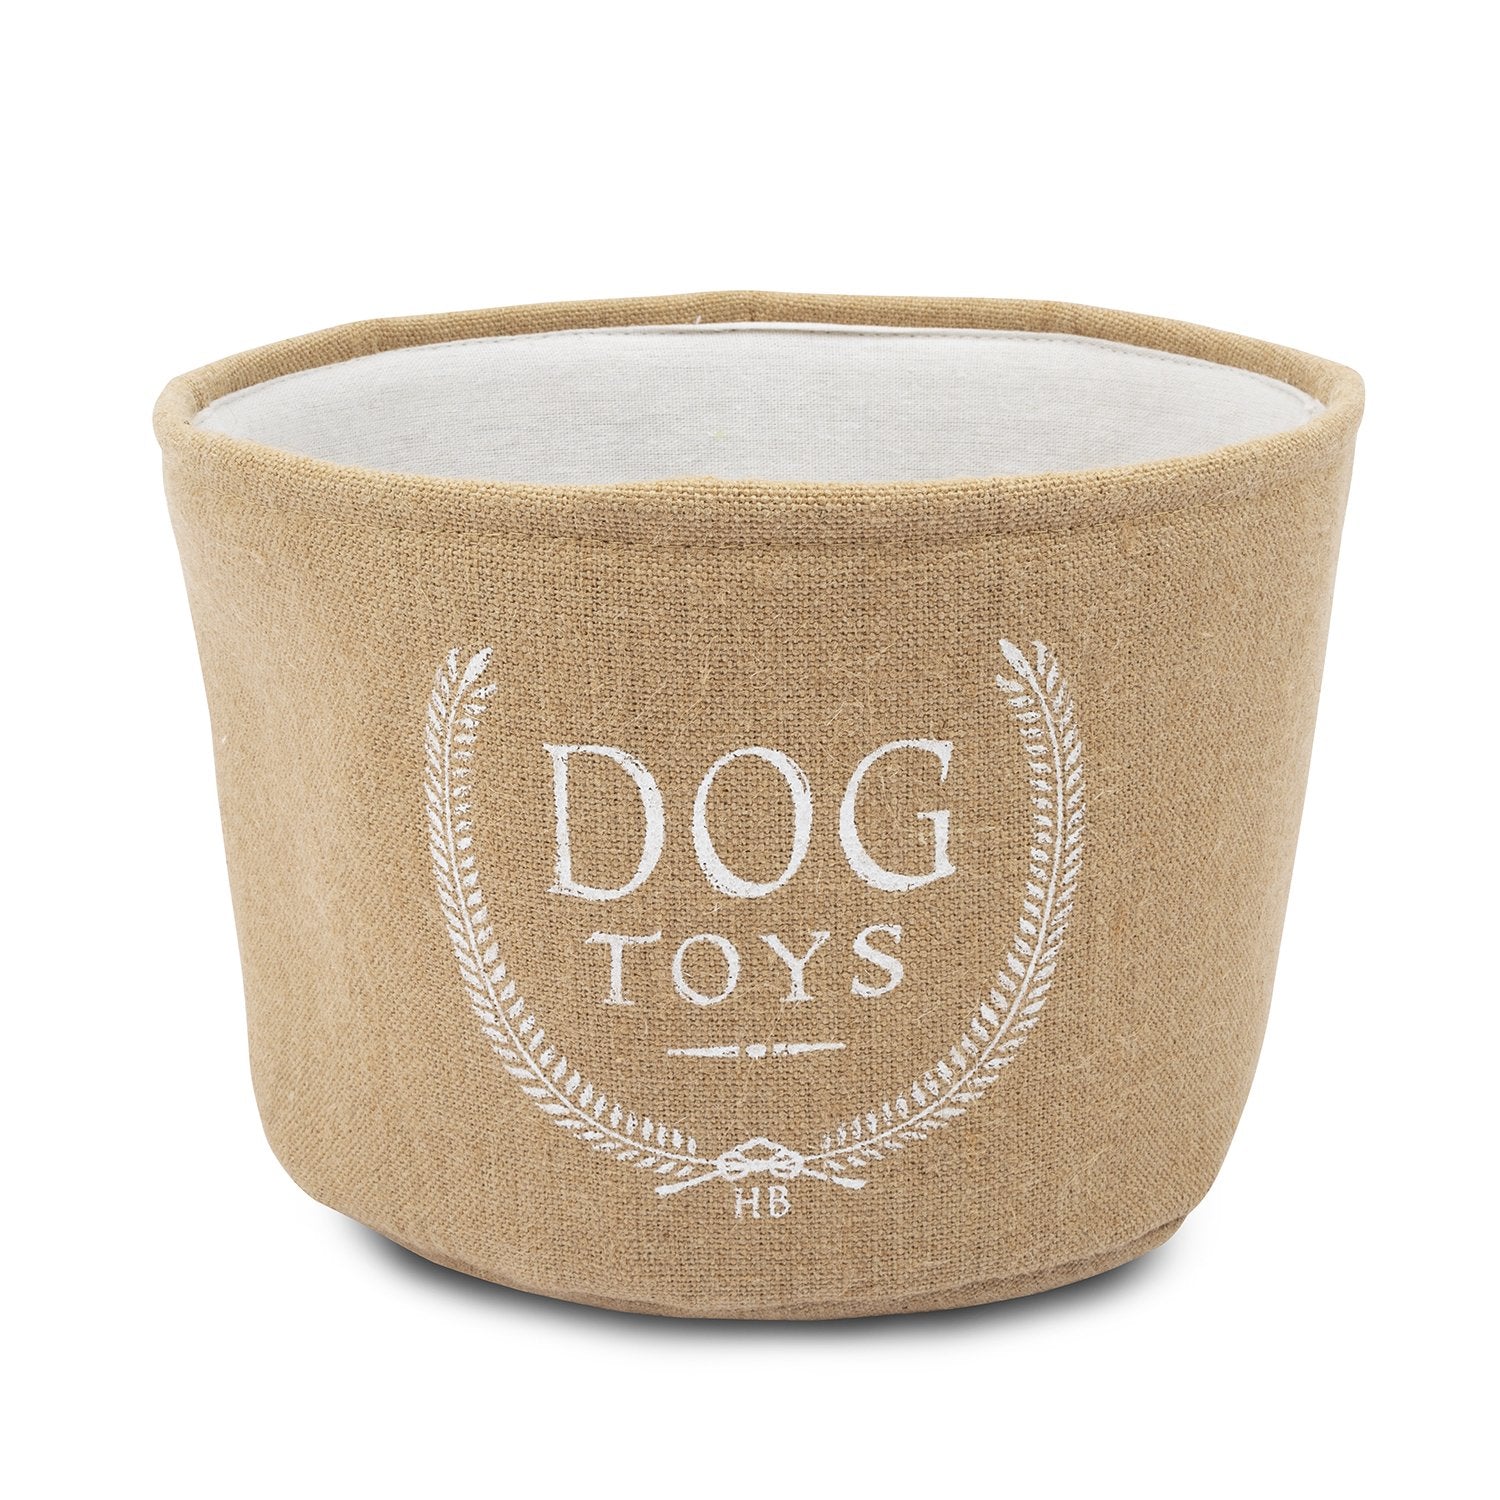 Large Dog Toy Storage Basket – Bins & Things